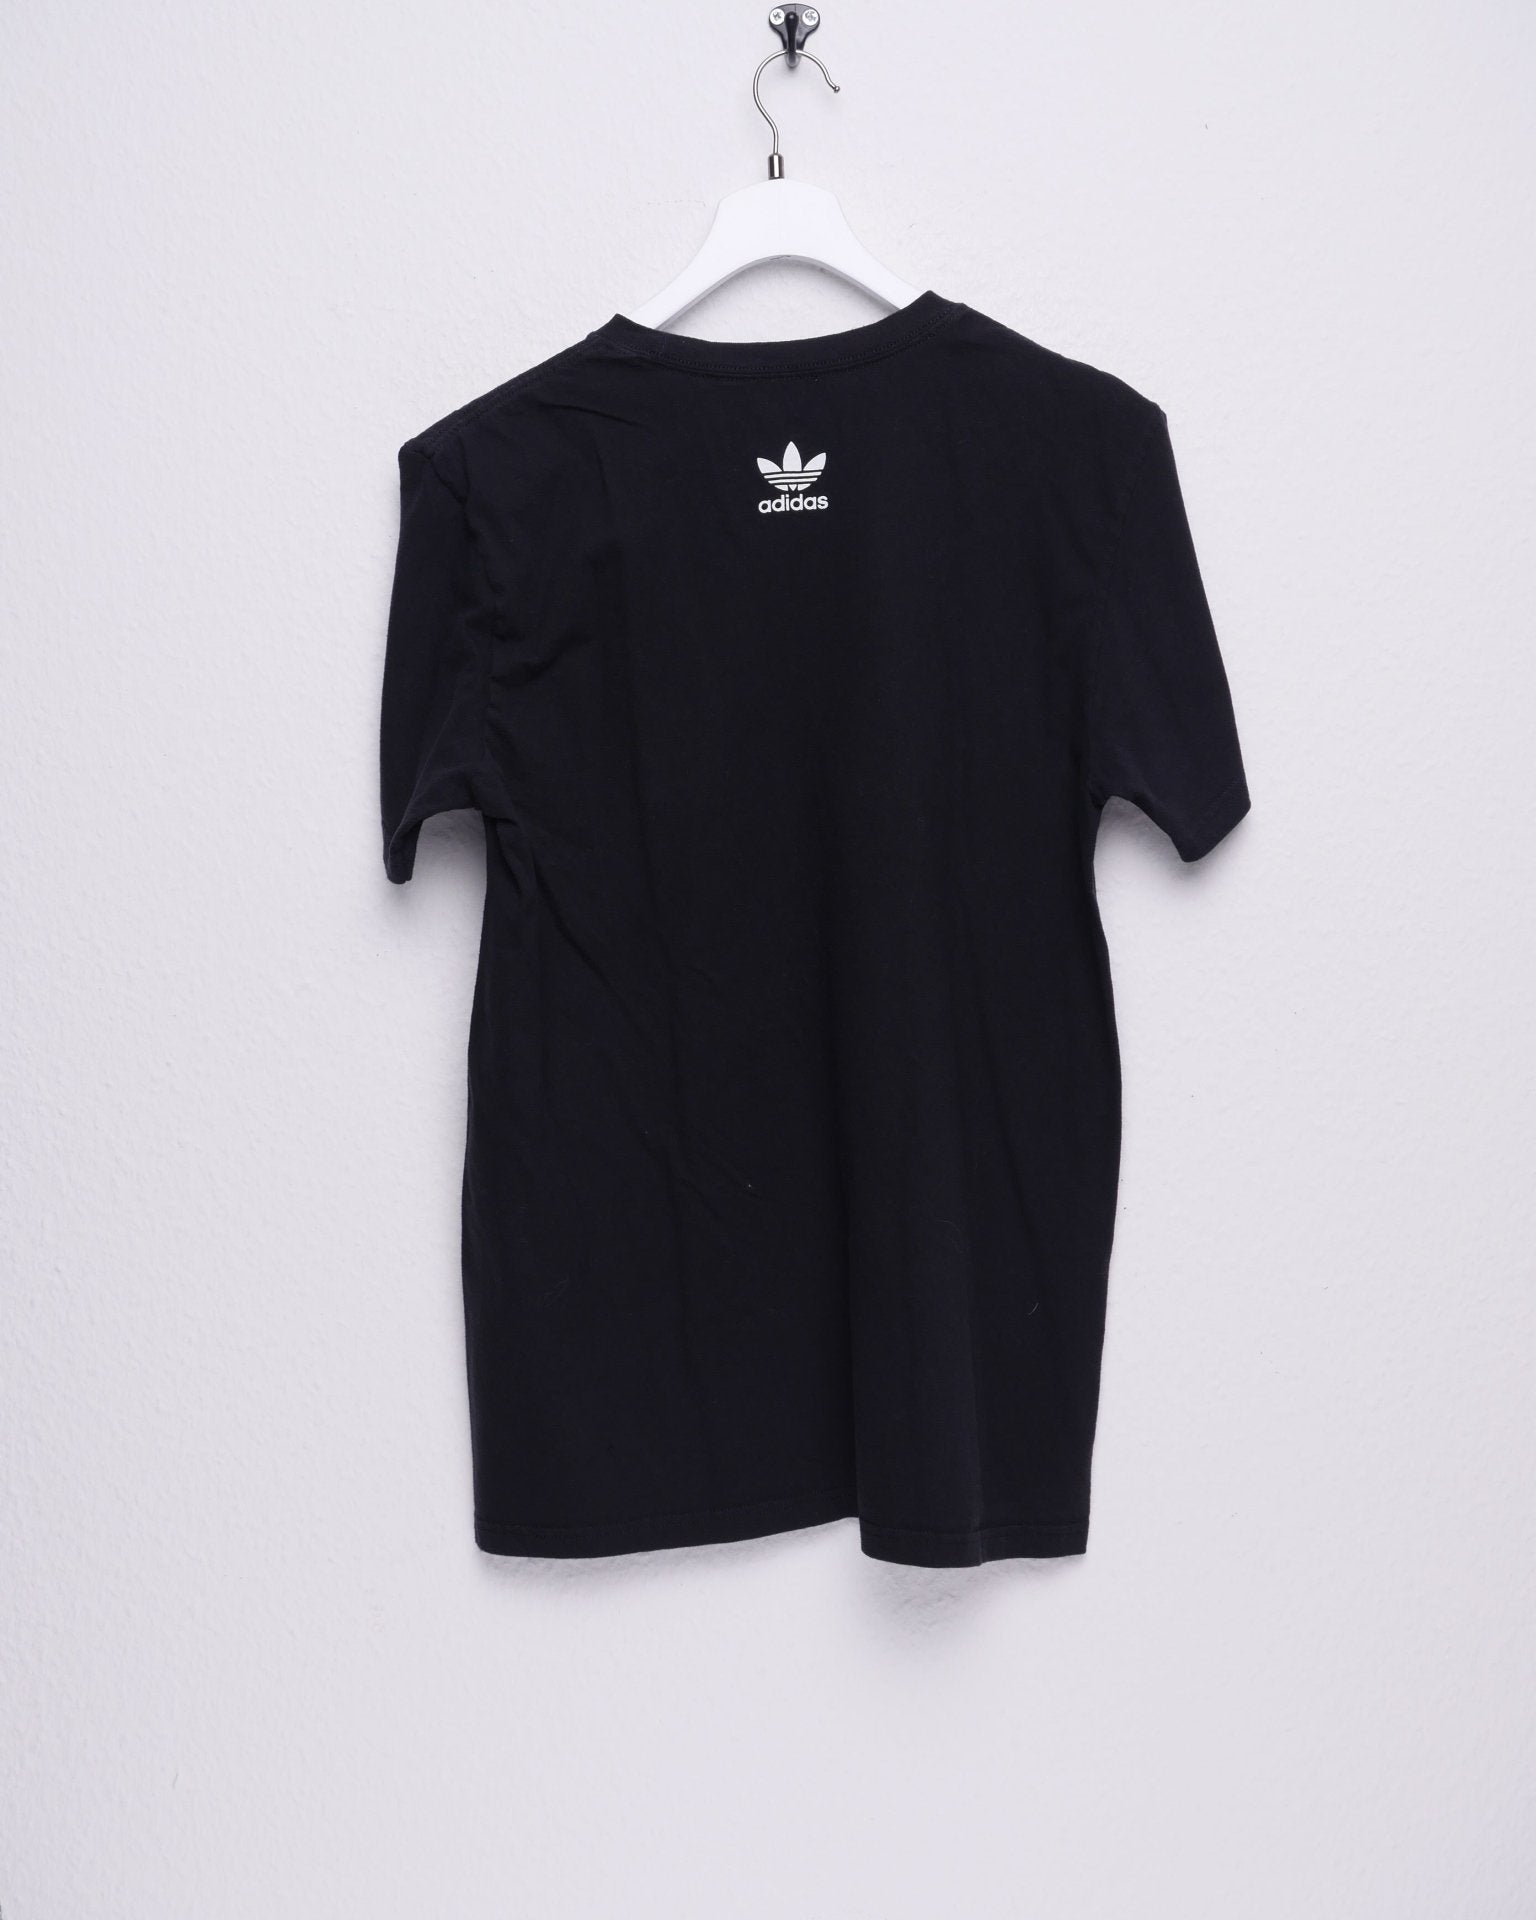 Adidas printed abstract Logo black Shirt - Peeces